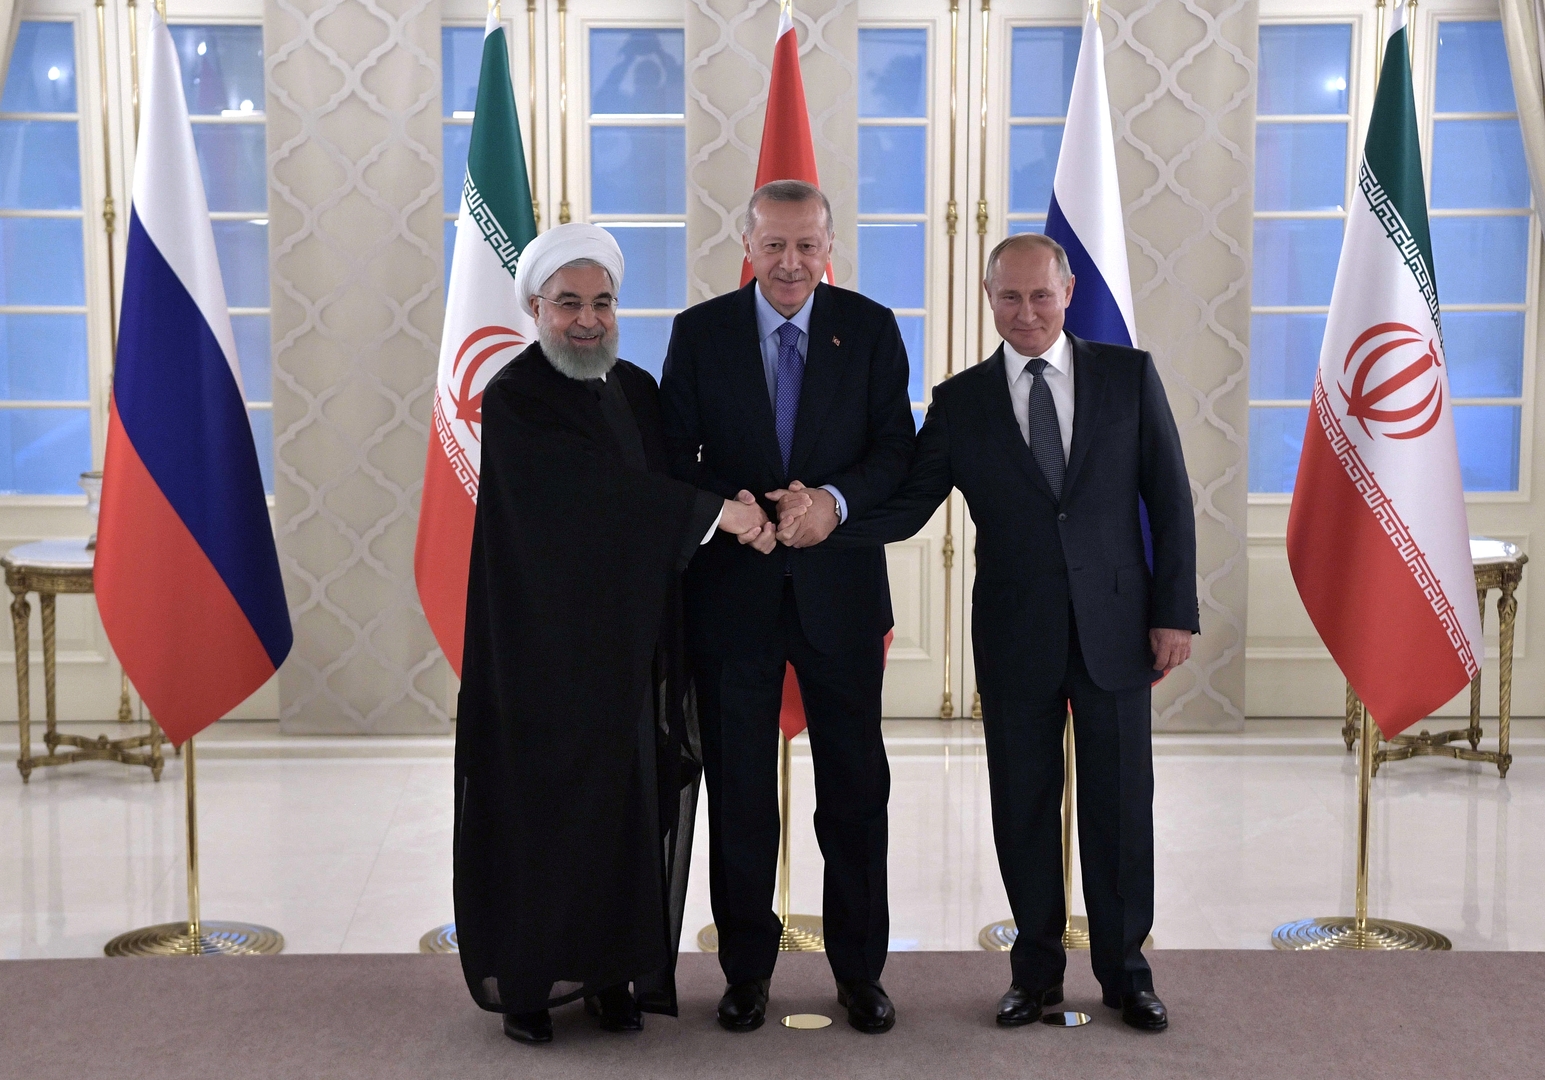 بوتين وأردوغان وروحاني: مخططات انفصالية في سوريا مرفوضة وقرار واشنطن بشأن الجولان يهدد أمن المنطقة